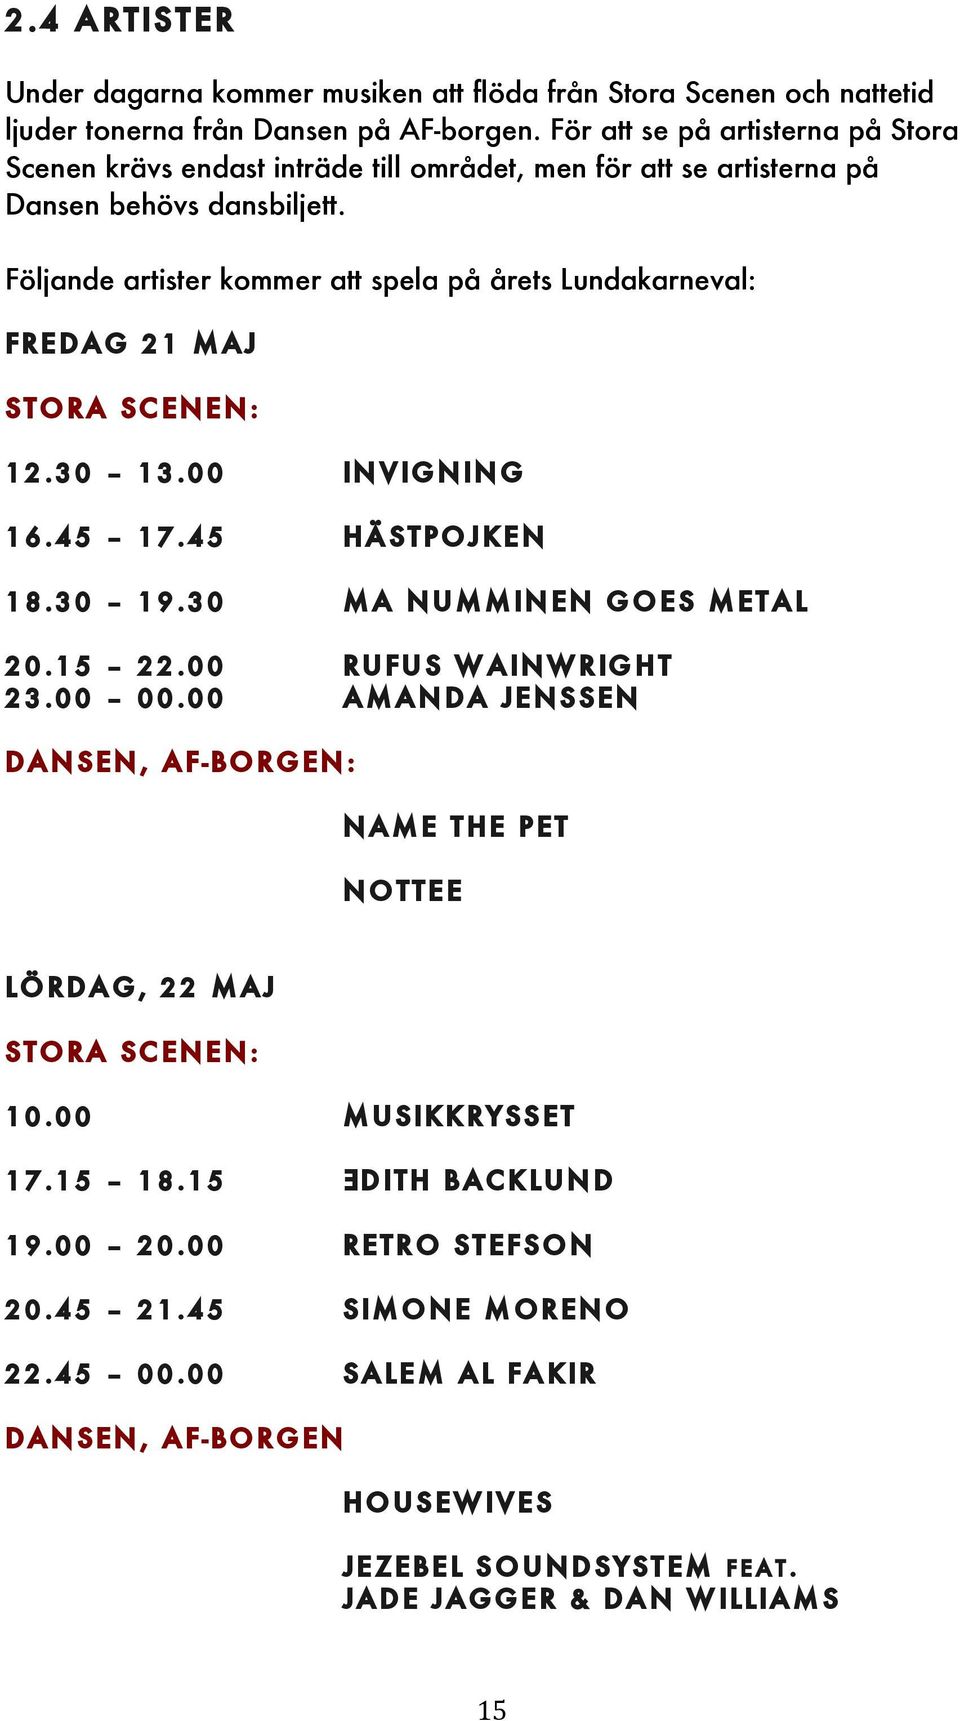 Följande artister kommer att spela på årets Lundakarneval: Fredag 21 maj Stora scenen: 12.30 13.00 invigning 16.45 17.45 Hästpojken 18.30 19.30 MA Numminen goes metal 20.15 22.